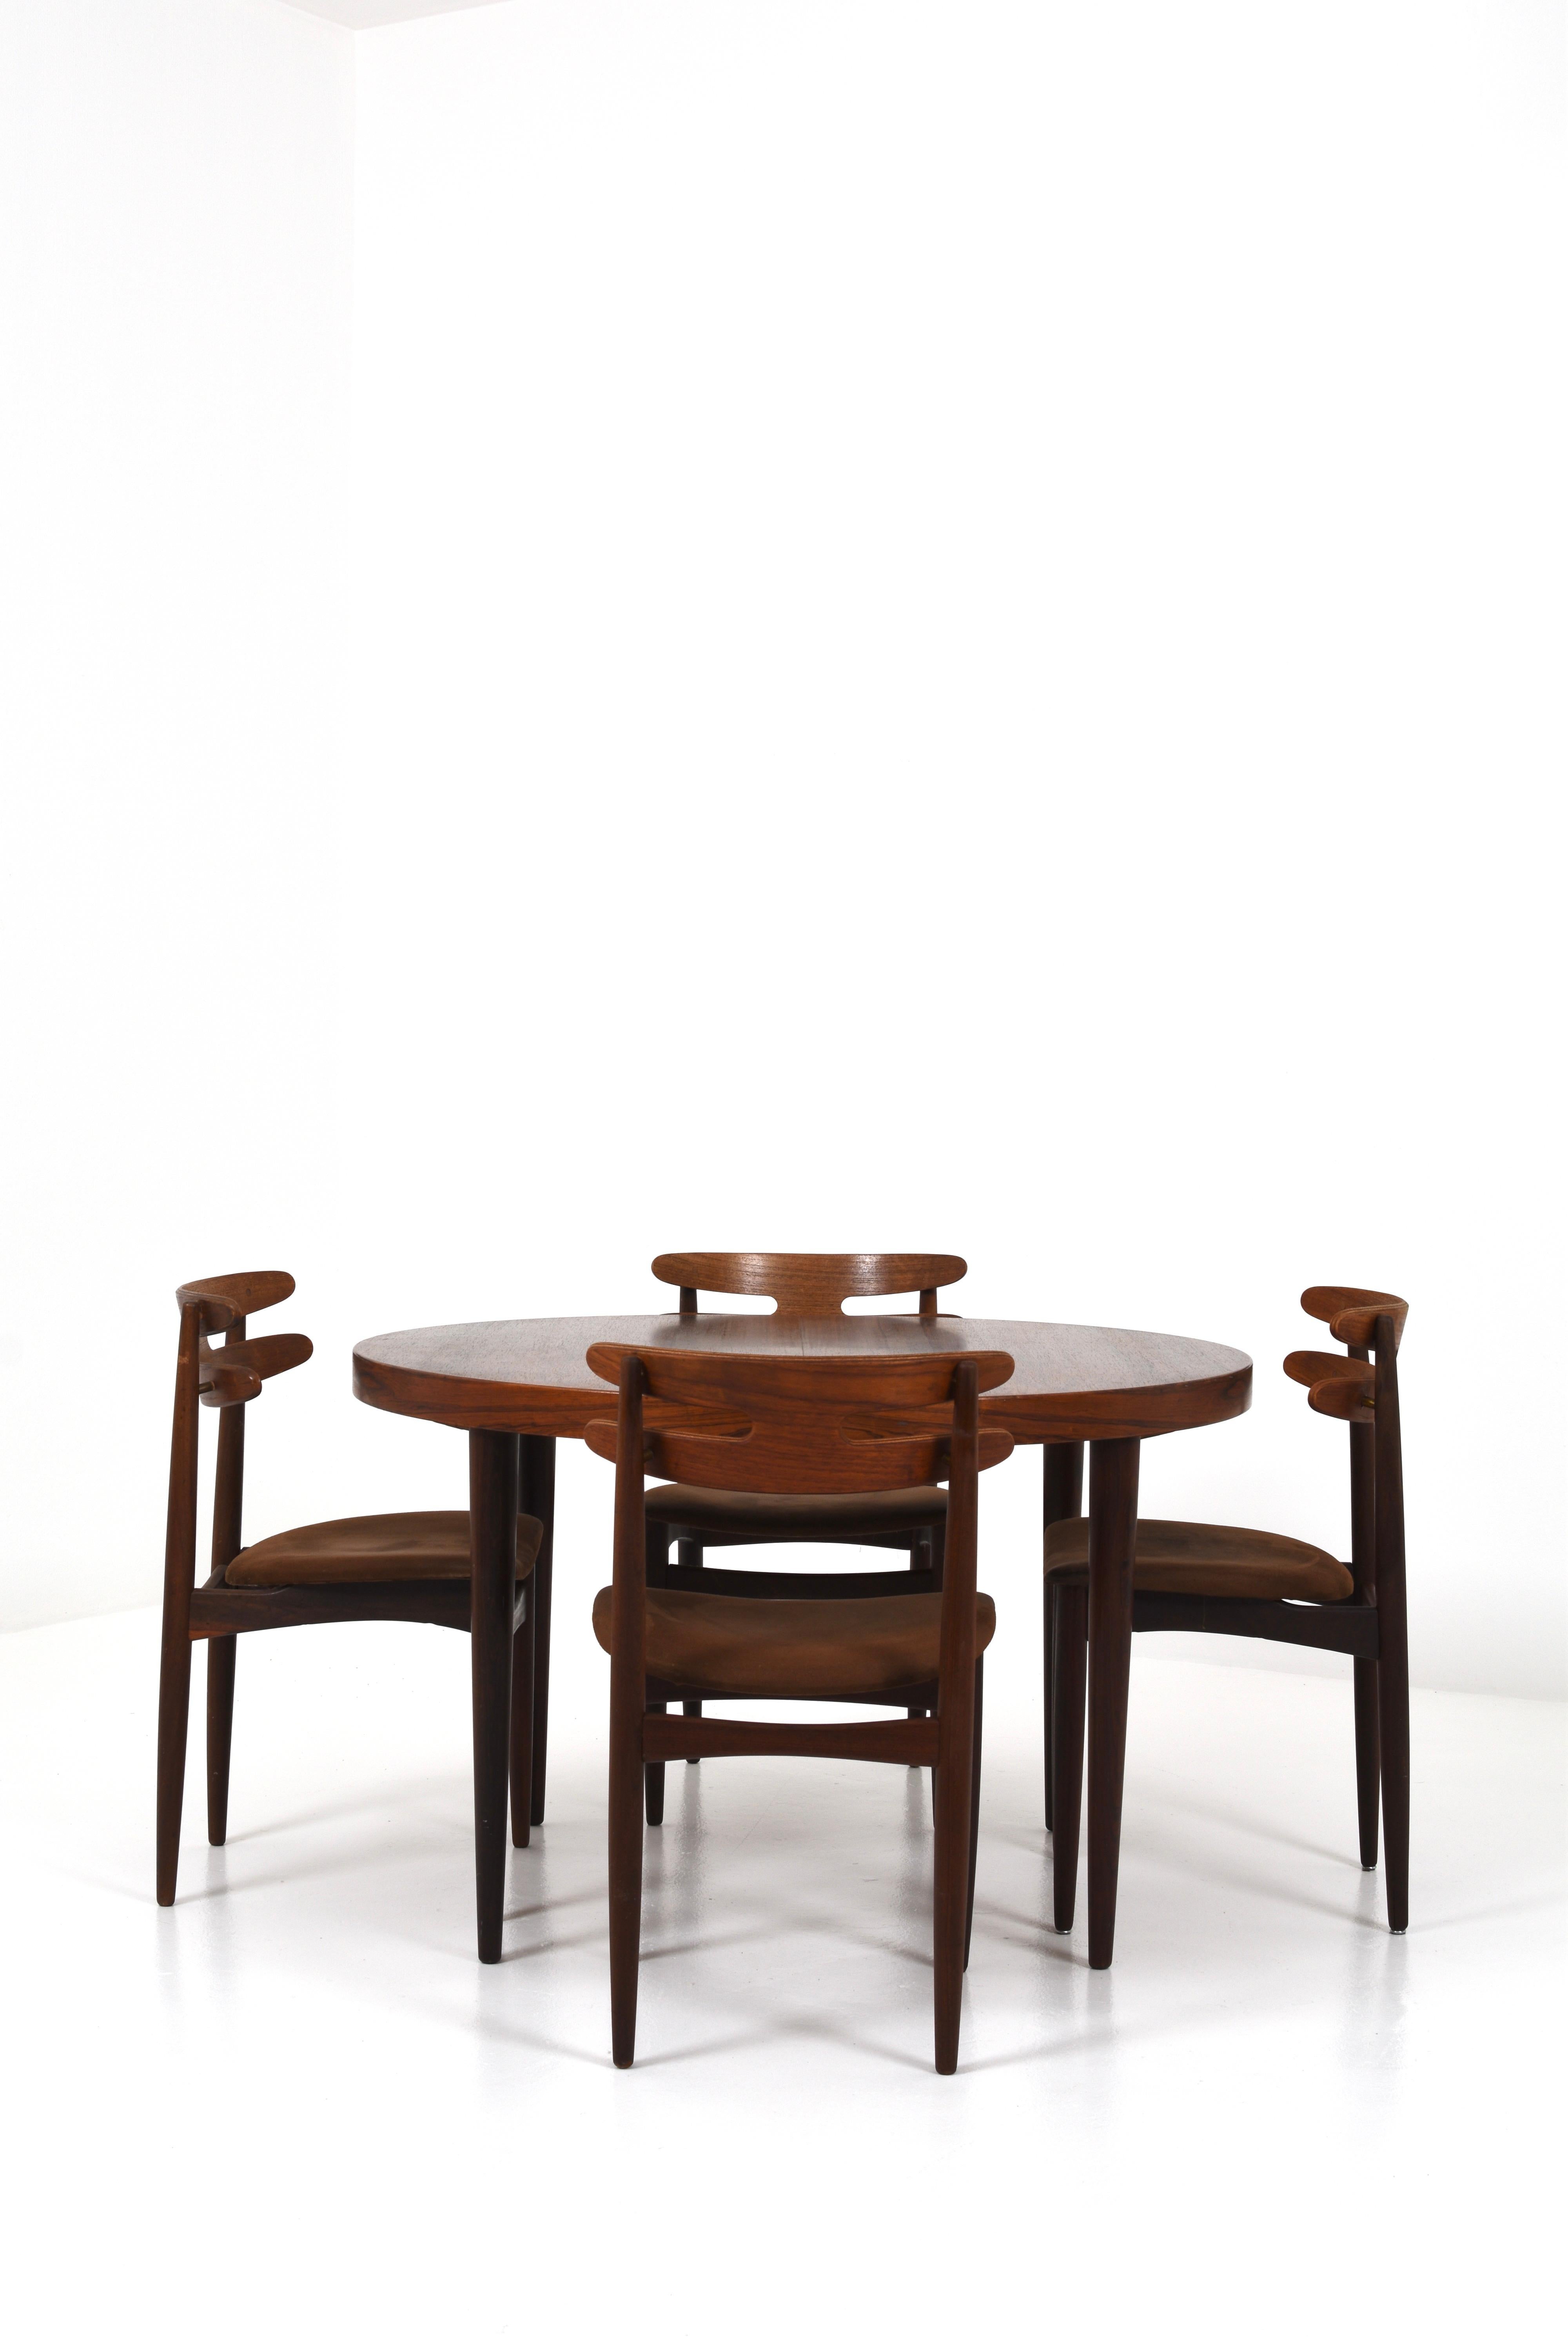 Cette élégante table de salle à manger est une création intemporelle du designer de meubles danois Kai Kristiansen et fabriquée par la célèbre société Feldballes Møbelfabrik au Danemark dans les années 1960.

Kai Kristiansen est connu pour sa